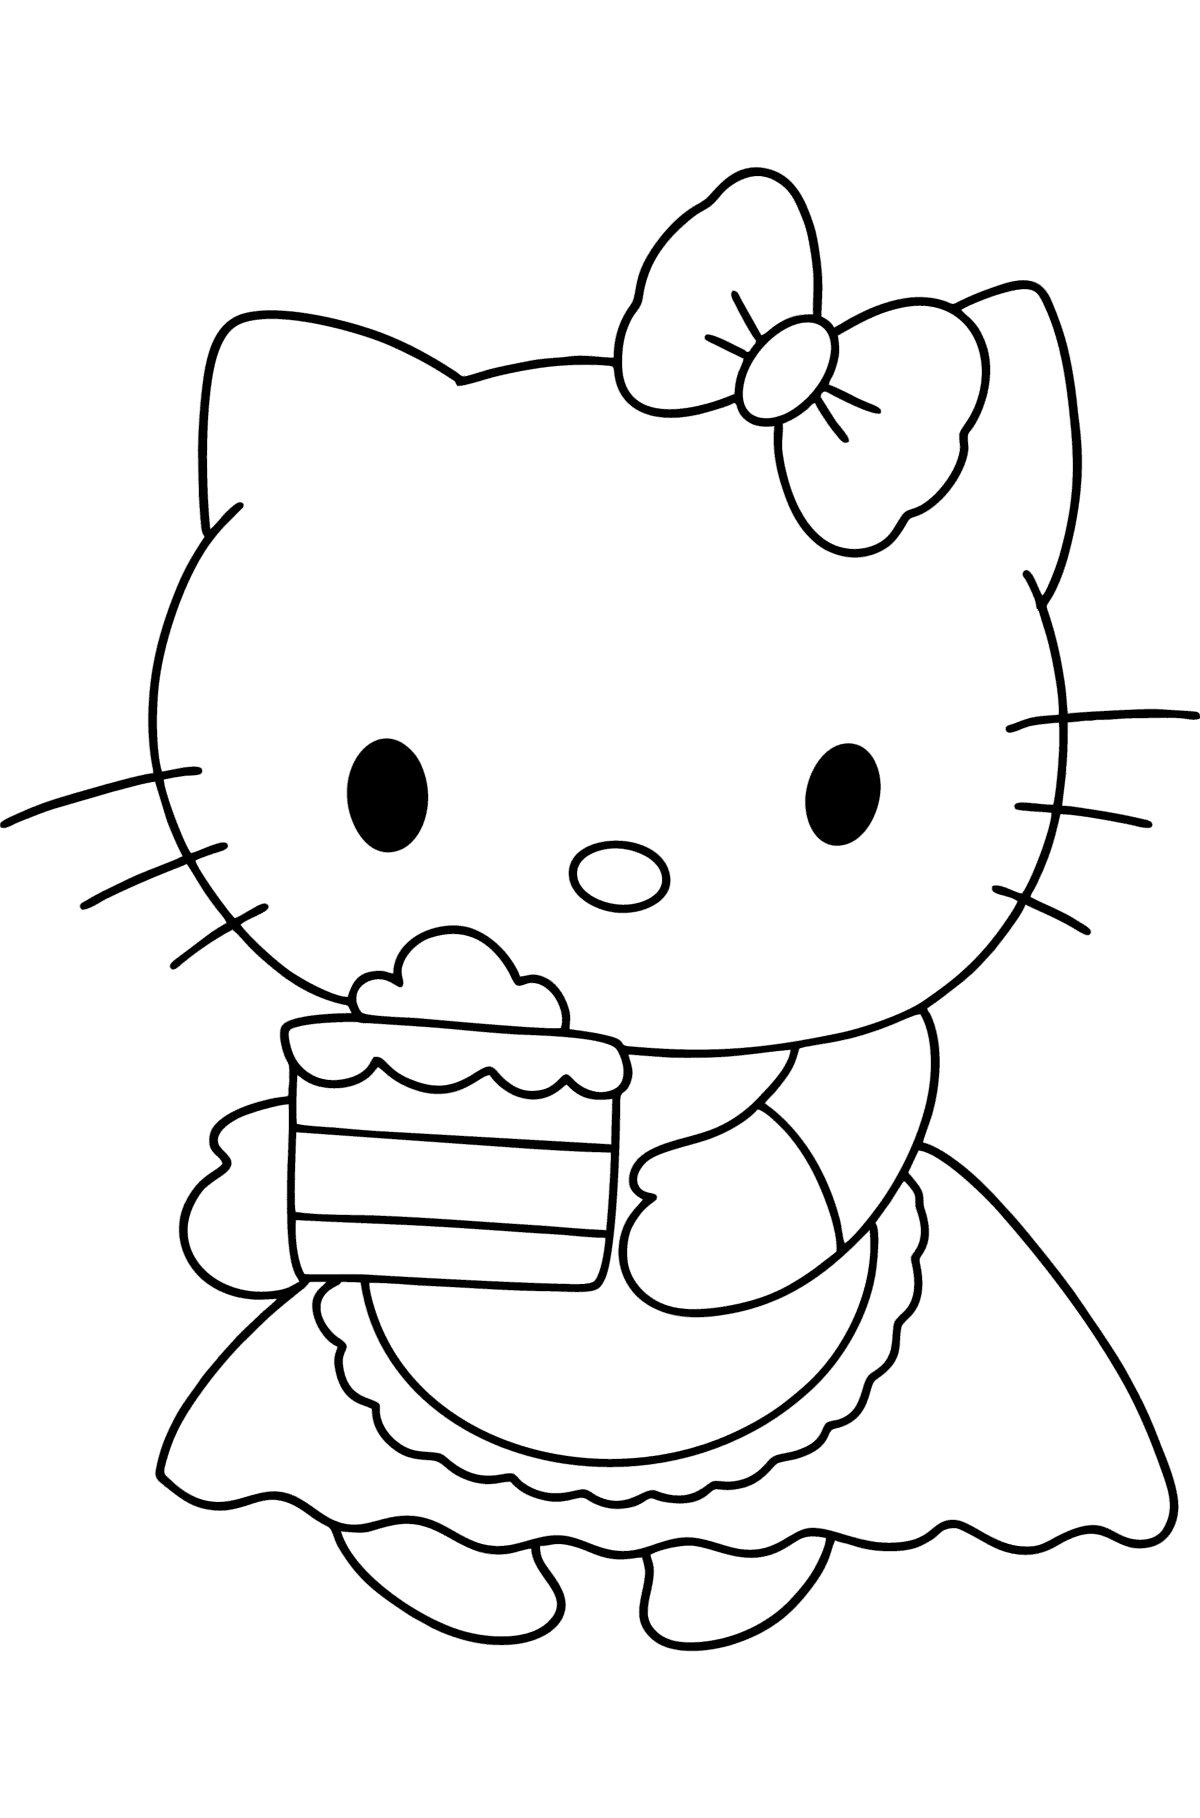 Kleurplaat Hello Kitty en taart - kleurplaten voor kinderen